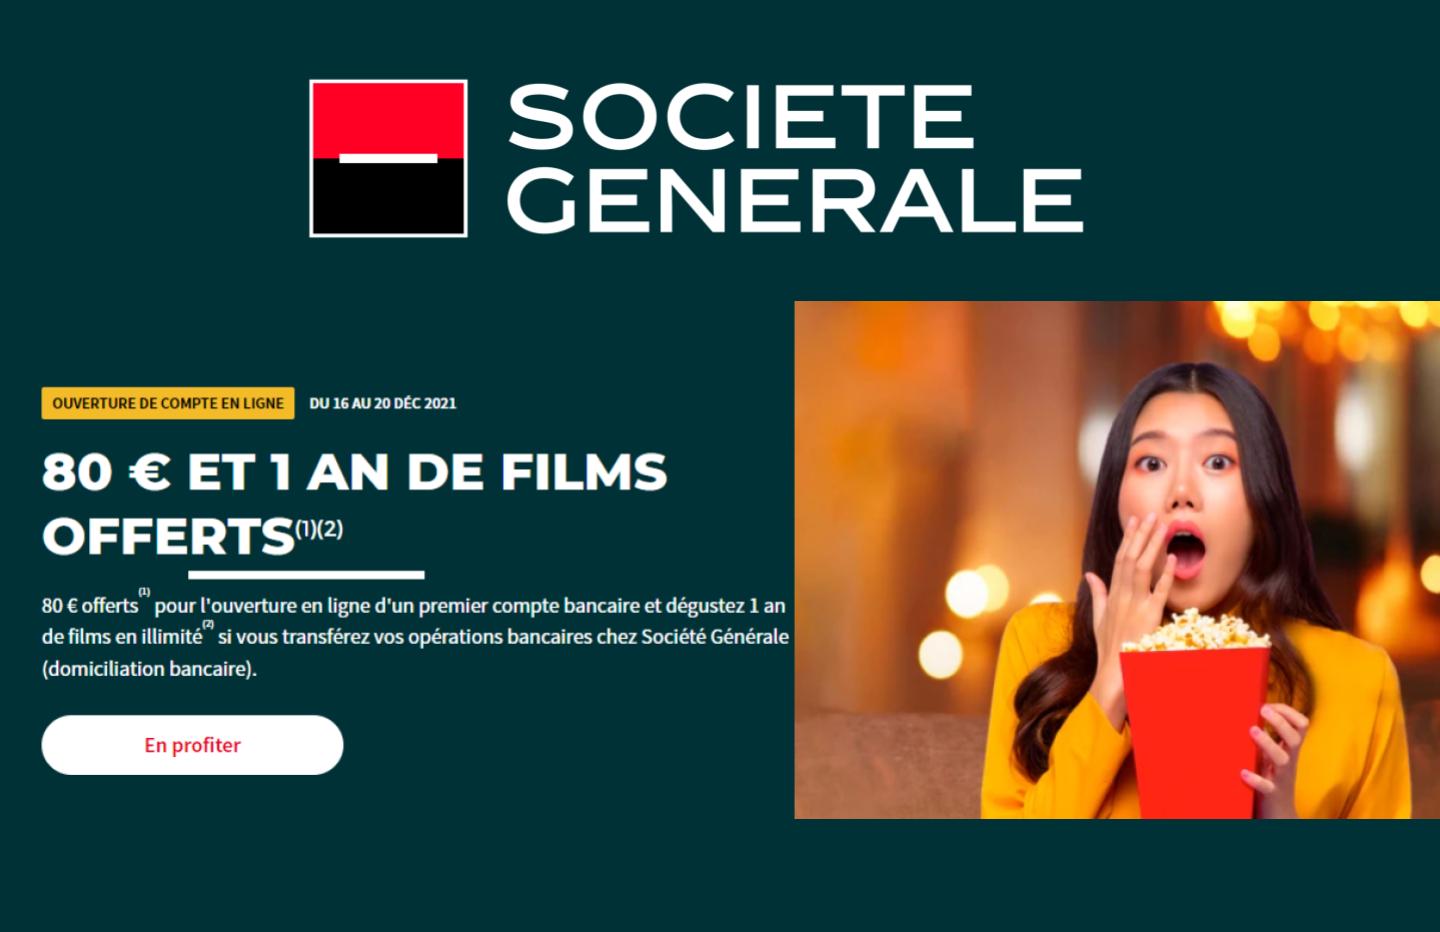 80 € et 1 an de films offerts, c’est ce que propose la Société Générale en ouvrant un compte